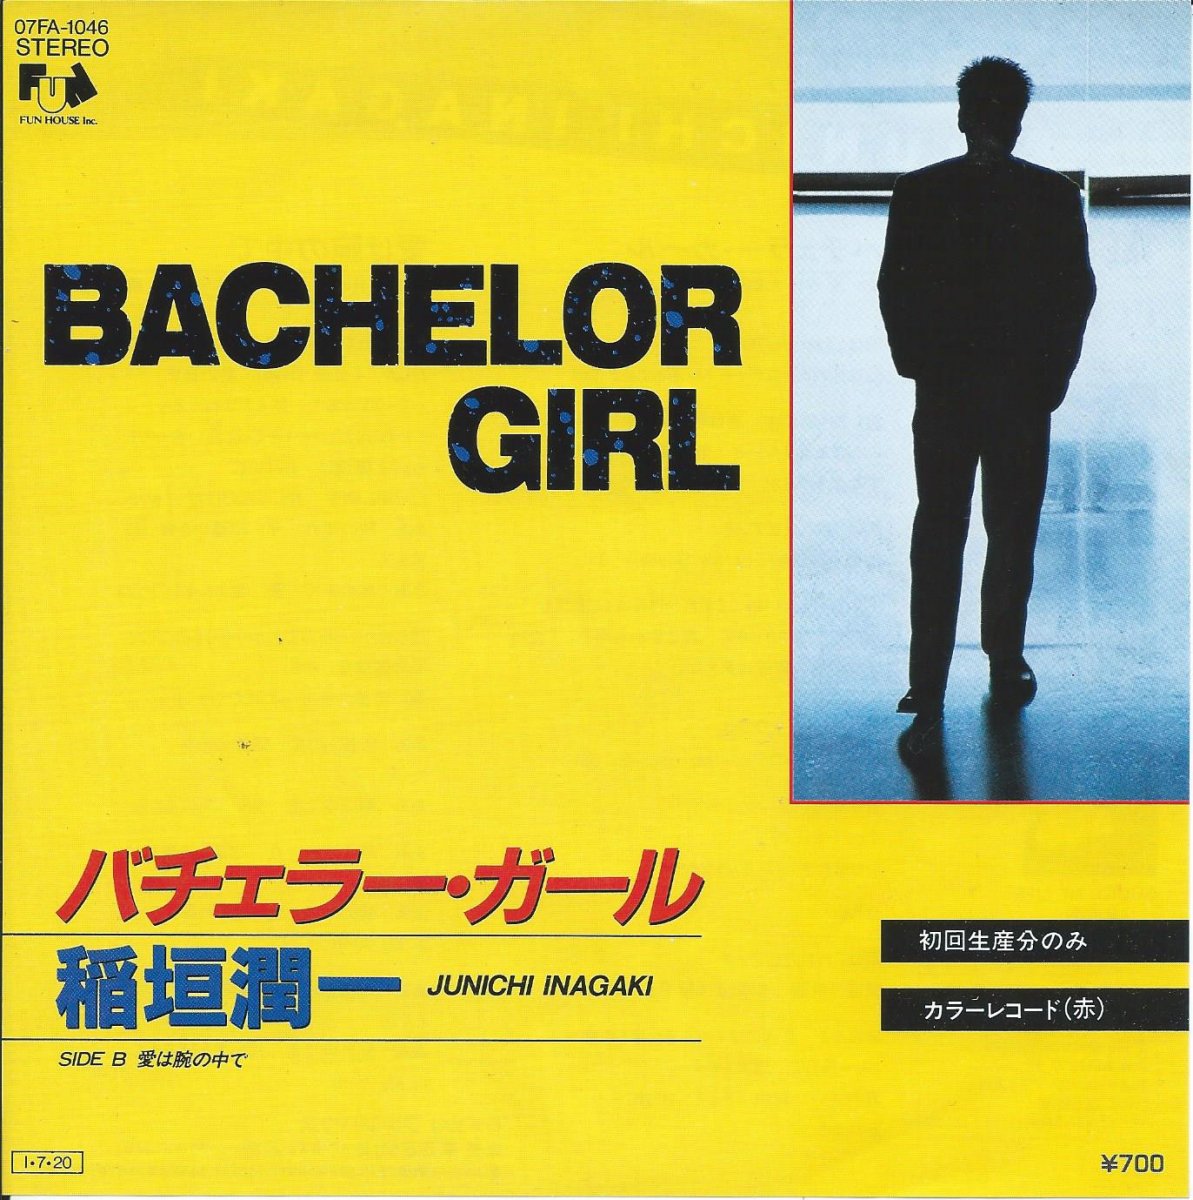 稲垣潤一 JUNICHI INAGAKI / バチェラー・ガール BACHELOR GIRL (7